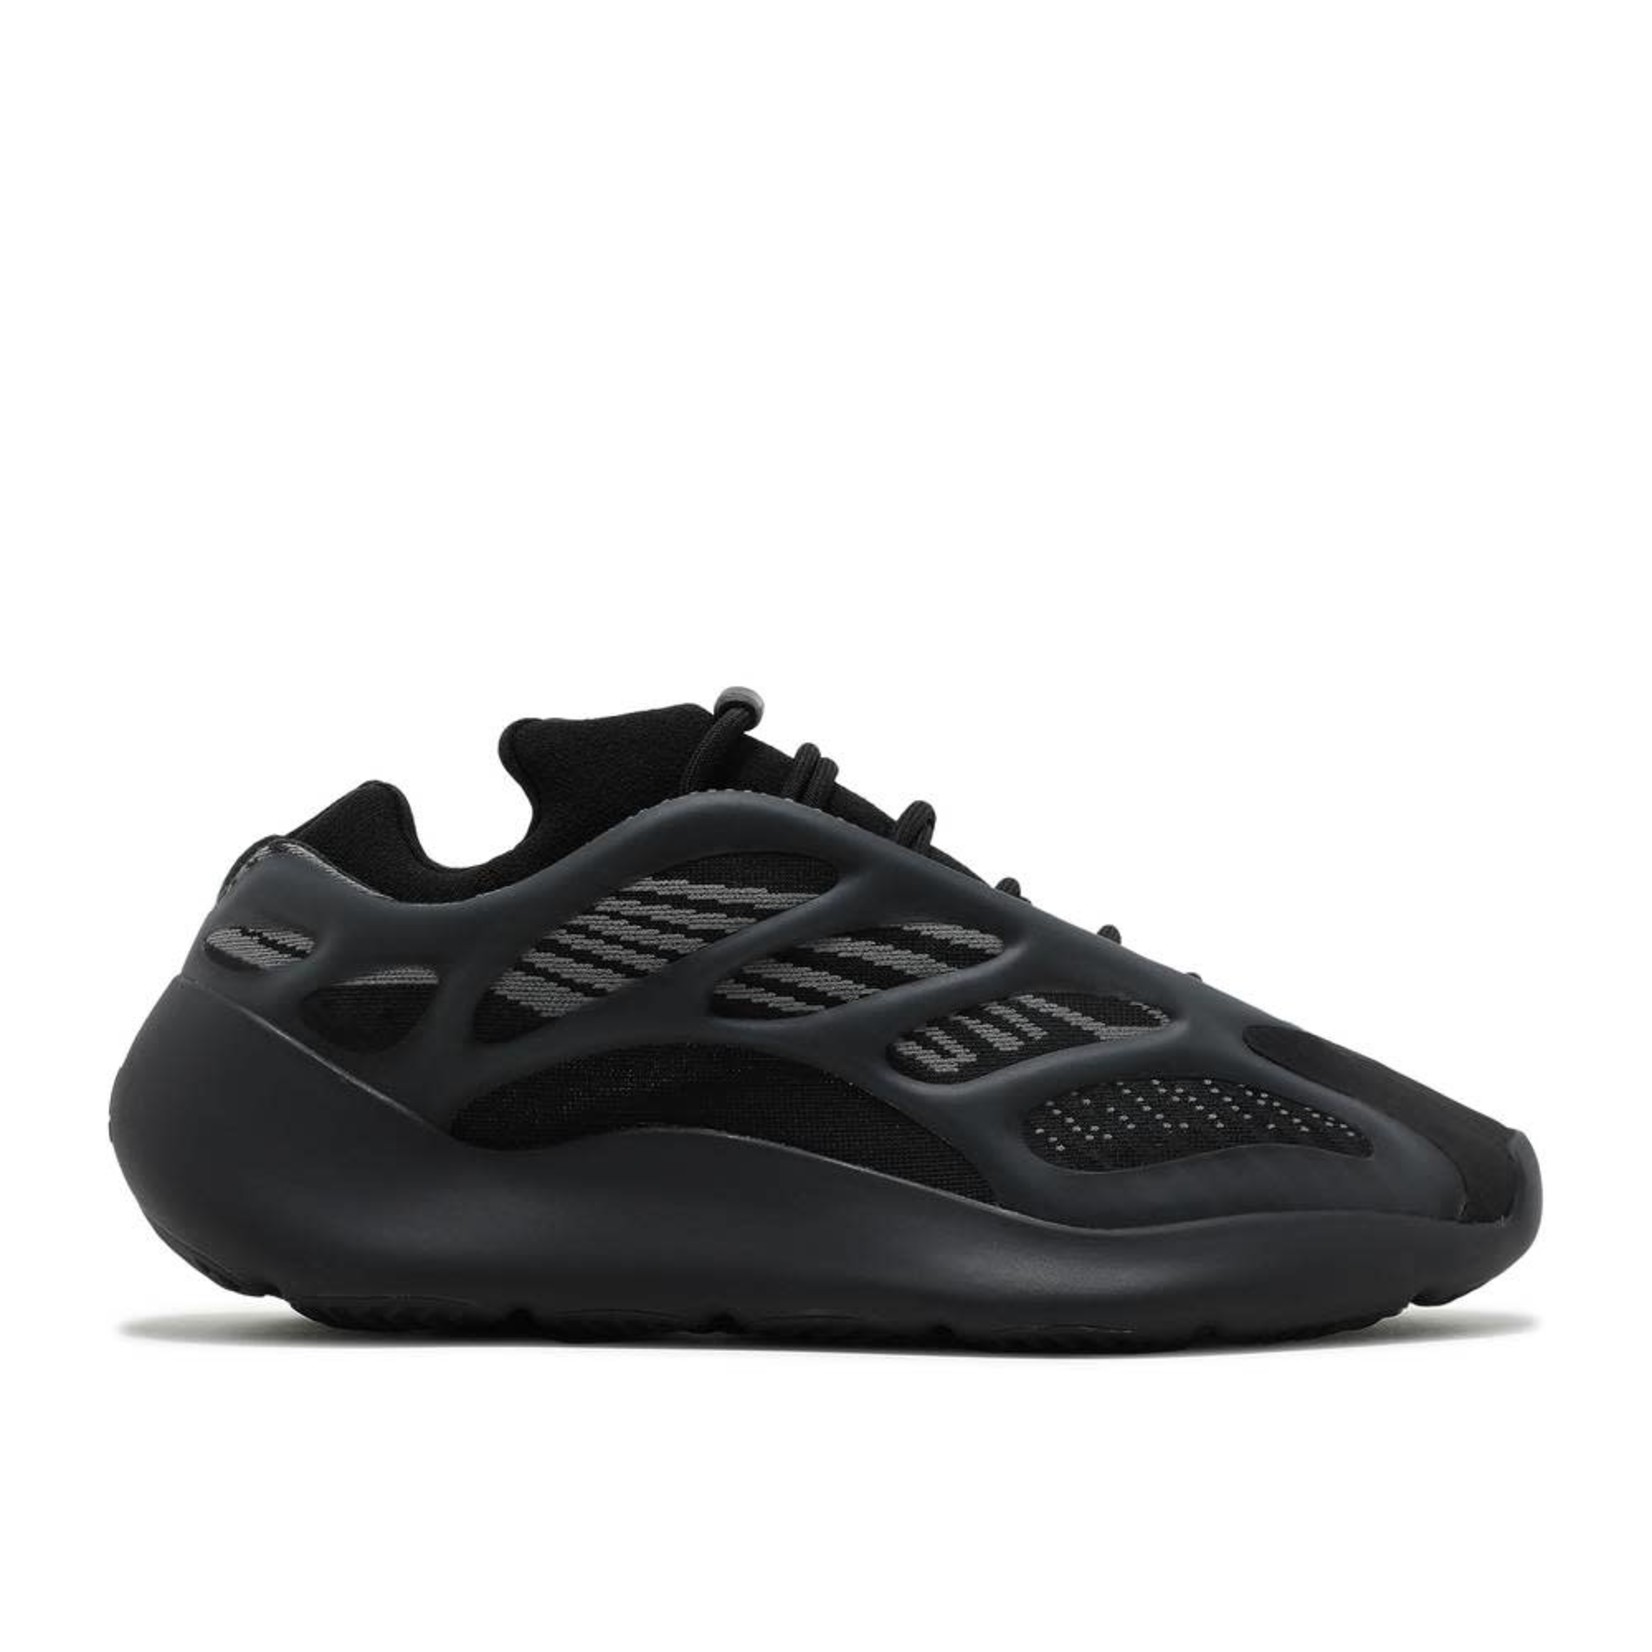 Adidas adidas Yeezy 700 V3 Dark Glow Size 5.5, DS BRAND NEW